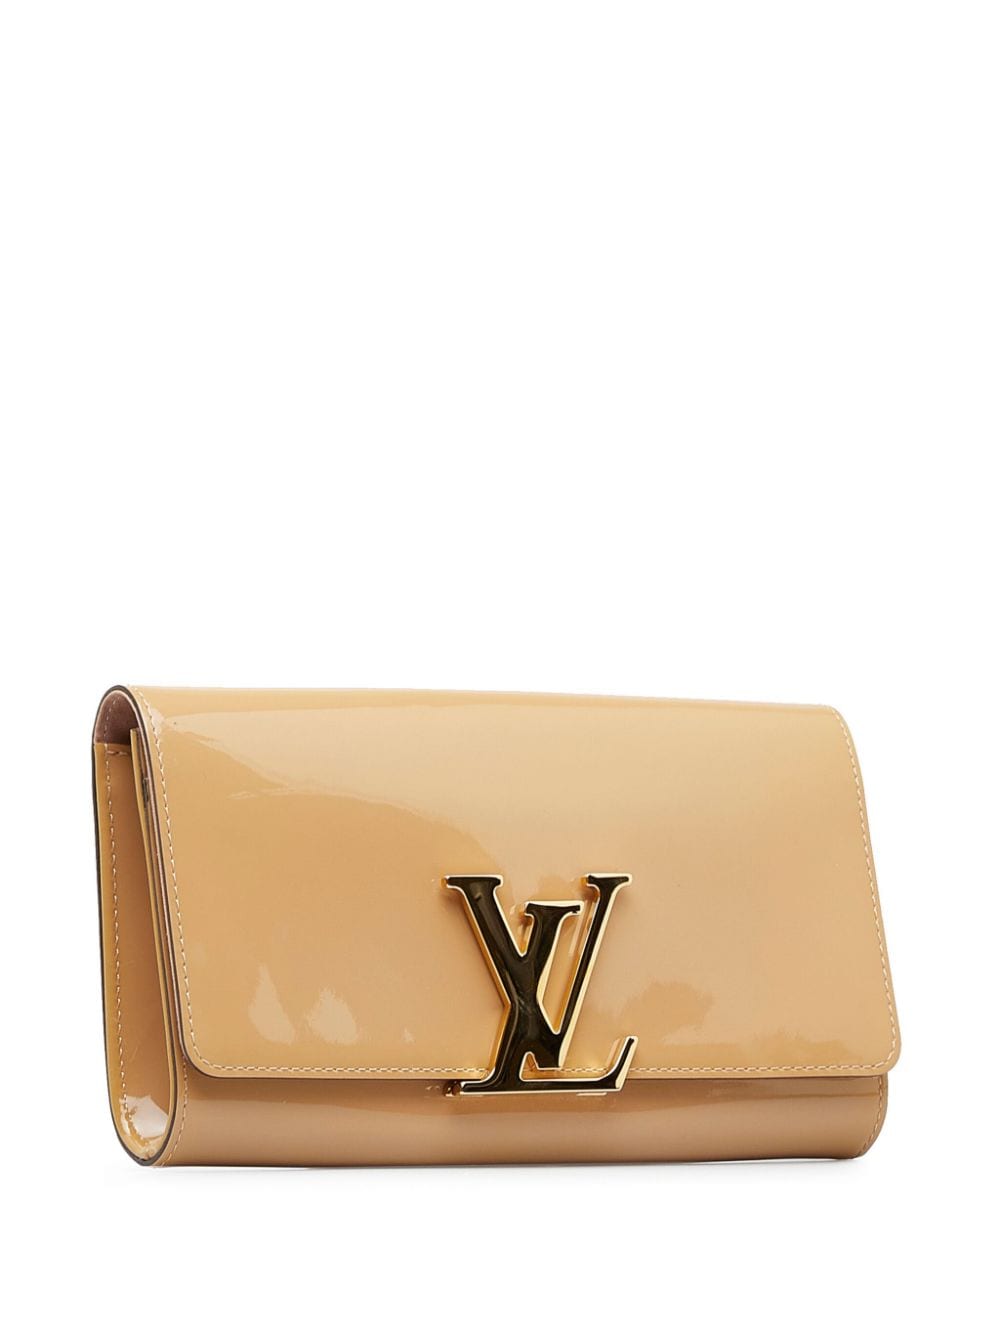 Louis Vuitton 2014 Pre-owned Monogram Vernis Louise Wallet - Neutrals